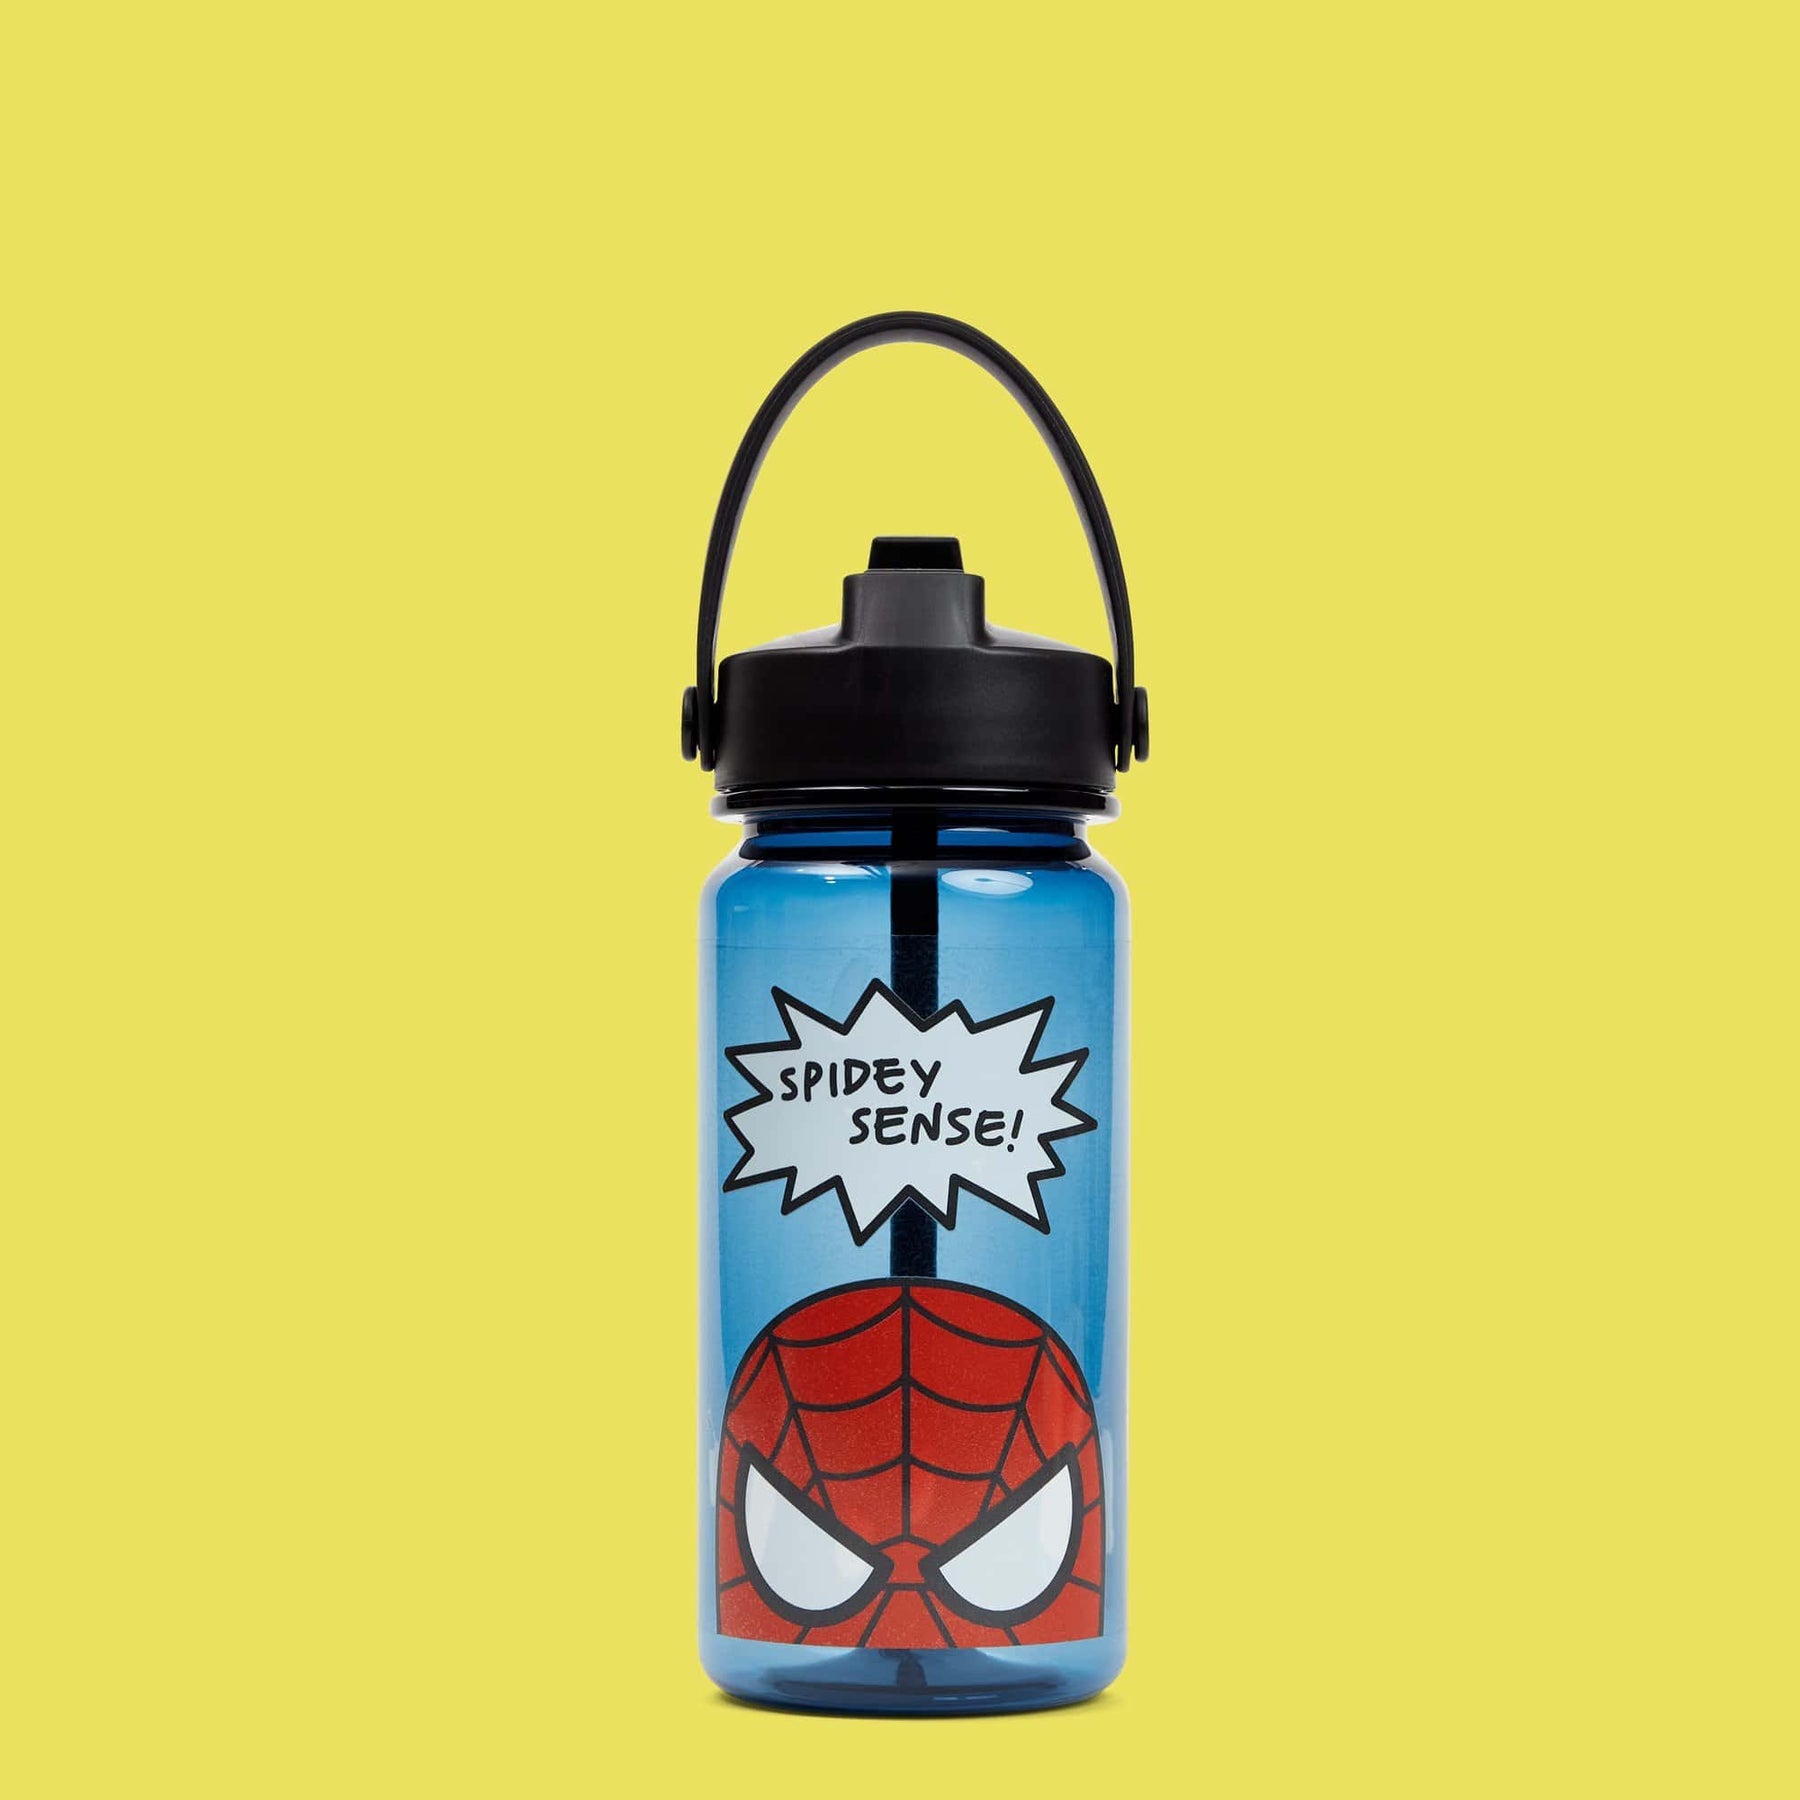 Yoobi x Marvel Spider-Man Bento Box